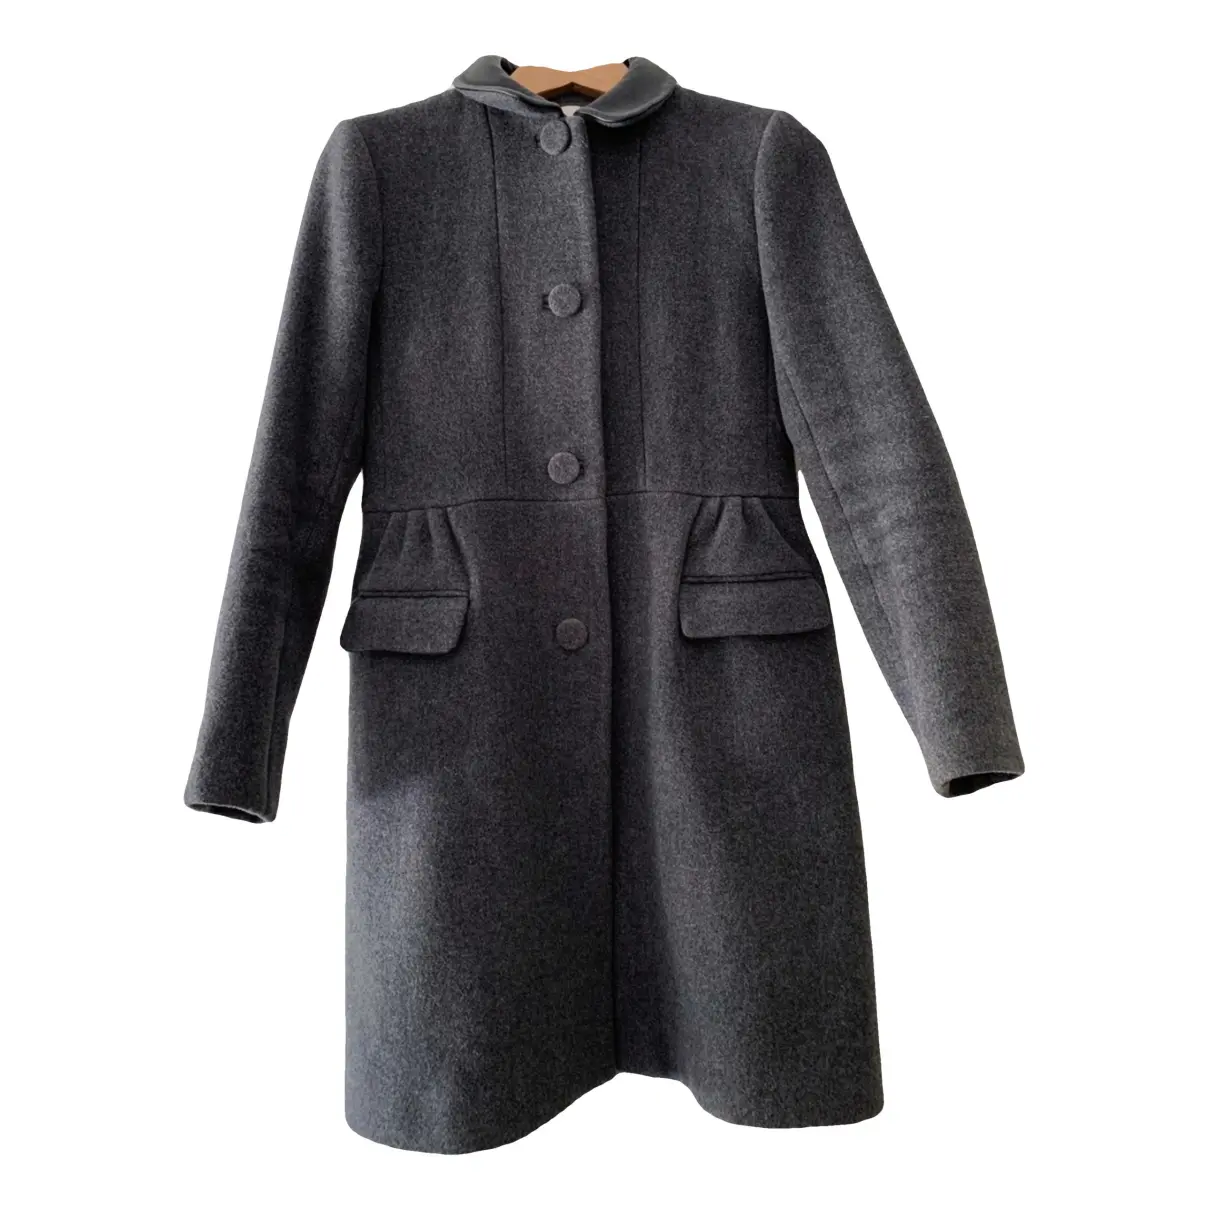 Fall Winter 2019 wool coat